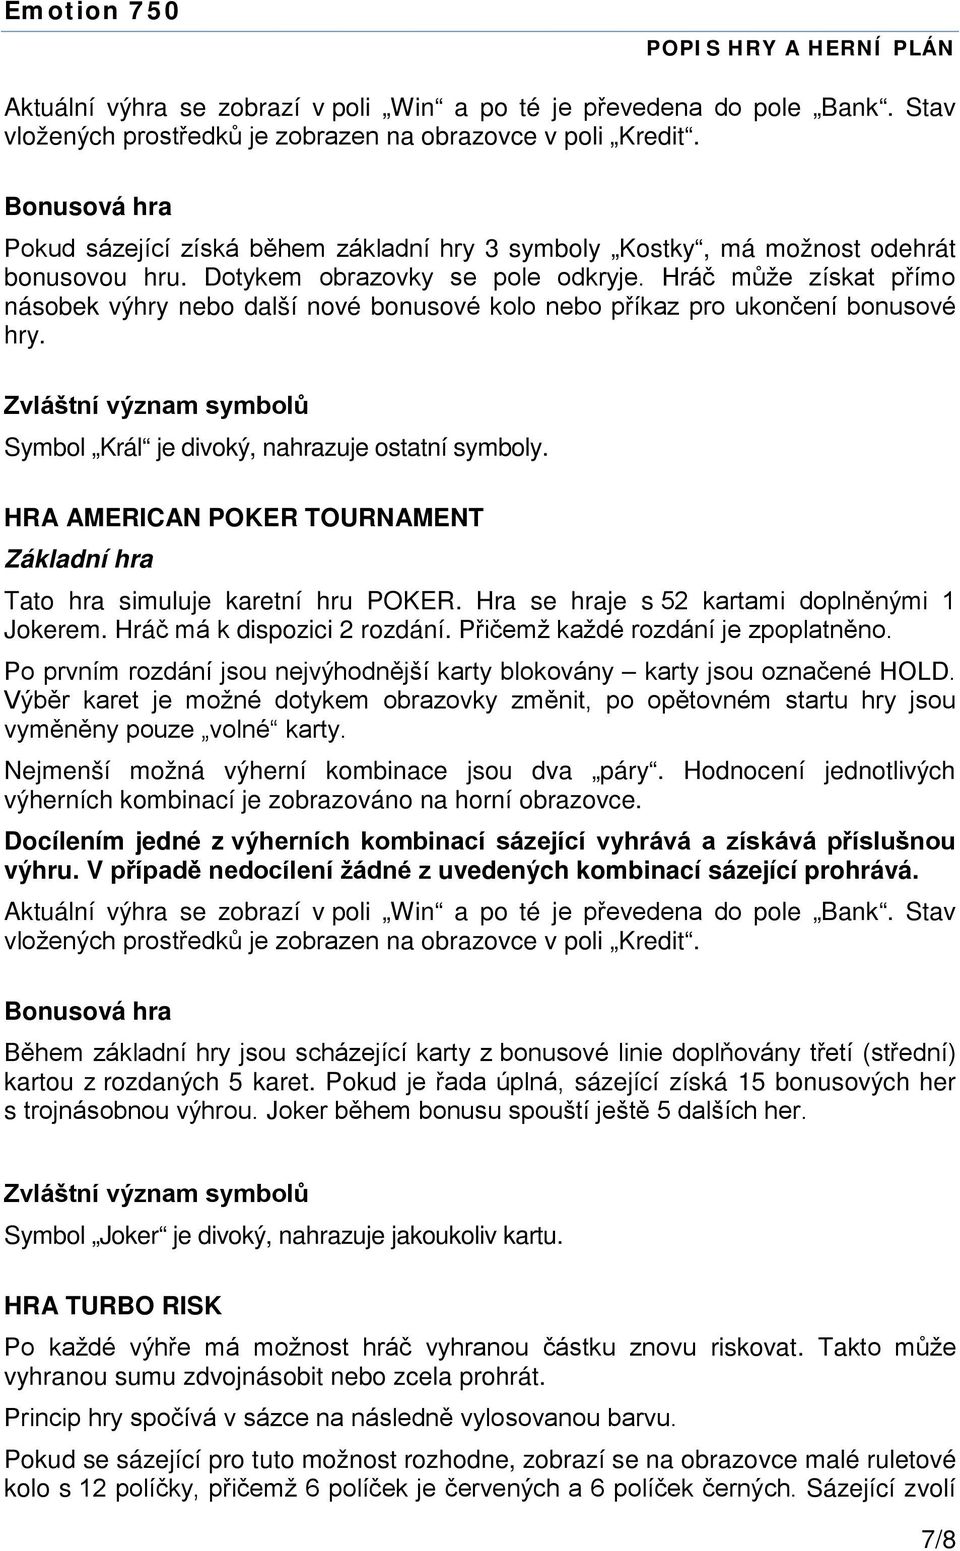 HRA AMERICAN POKER TOURNAMENT Tato hra simuluje karetní hru POKER. Hra se hraje s 52 kartami doplněnými 1 Jokerem. Hráč má k dispozici 2 rozdání. Přičemž každé rozdání je zpoplatněno.